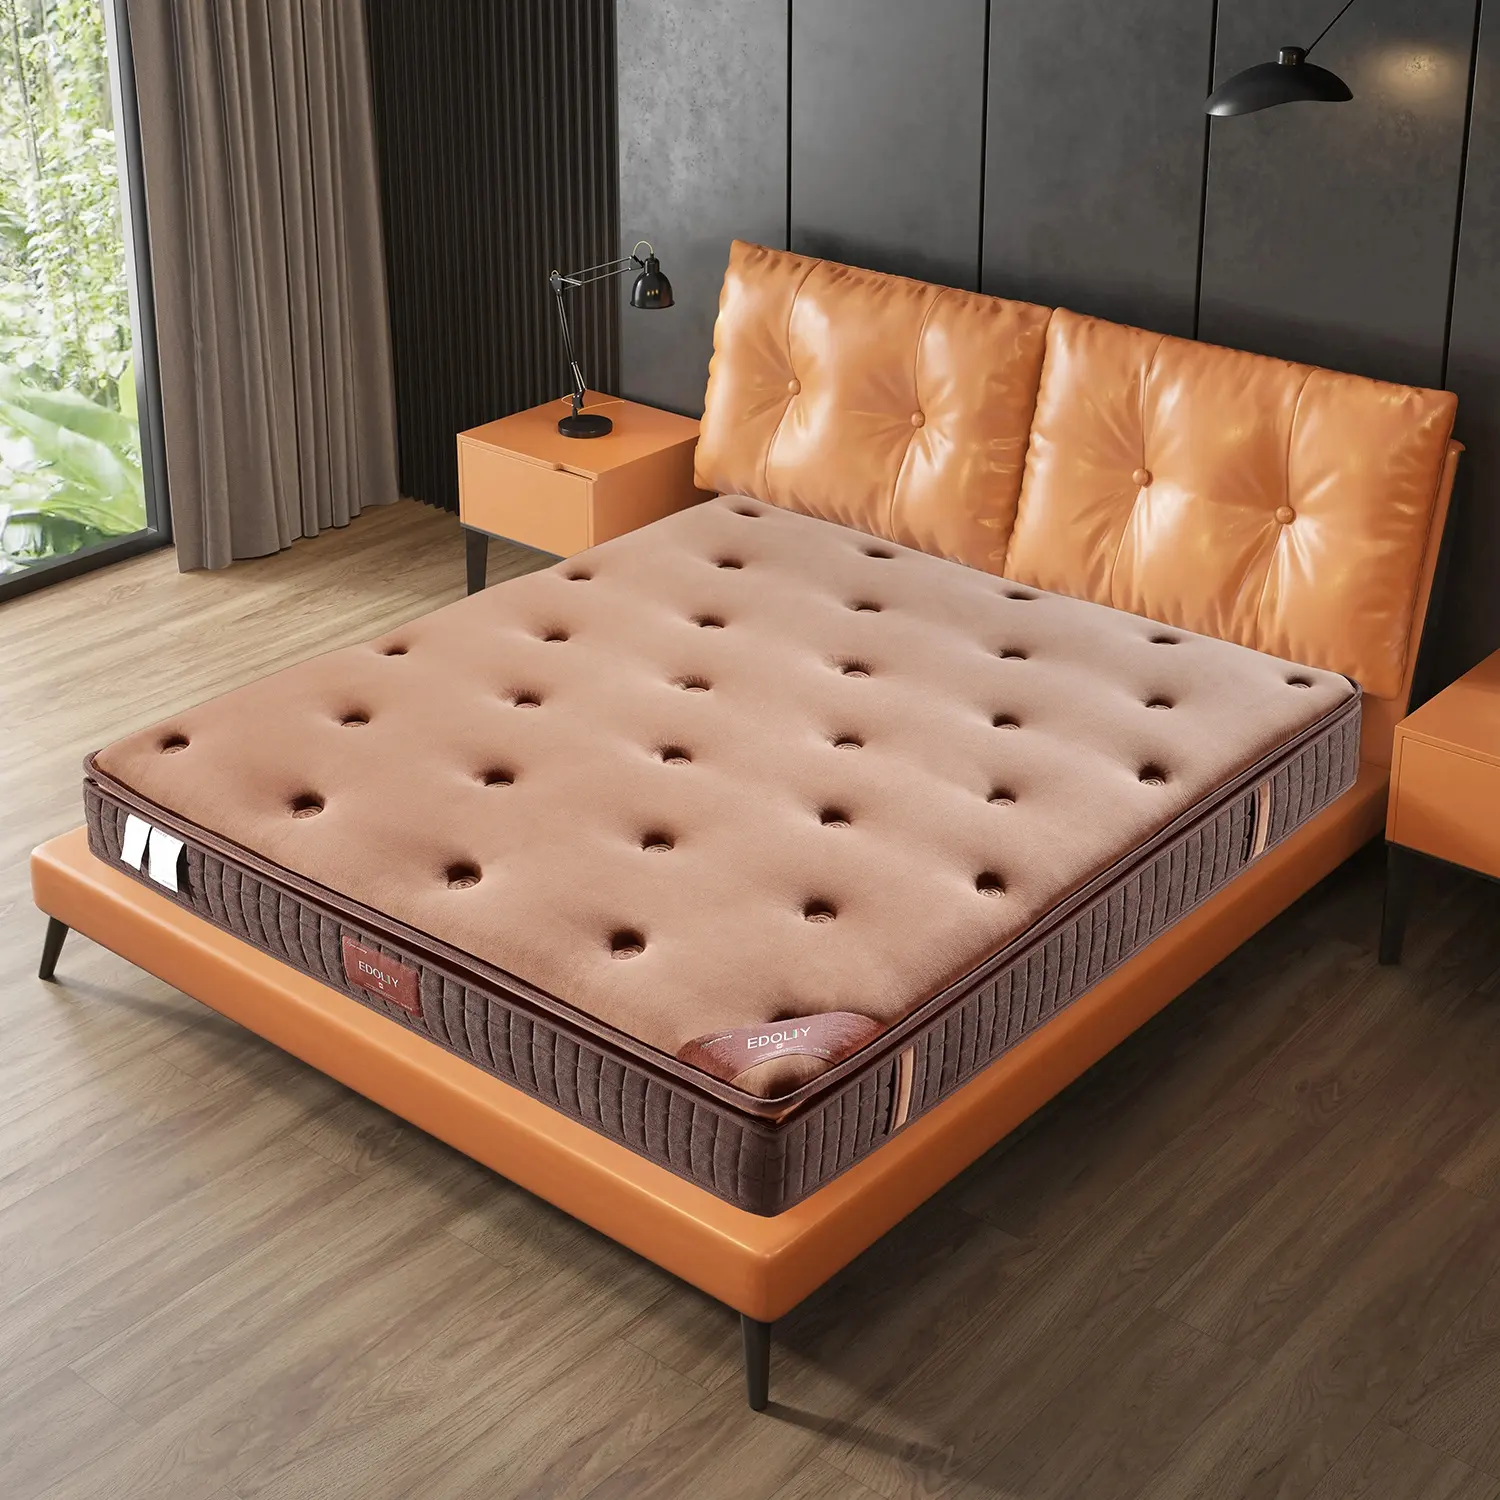 Fábrica al por mayor colchones King Size espuma viscoelástica colchón de Hotel mejor colchón de cama de primavera